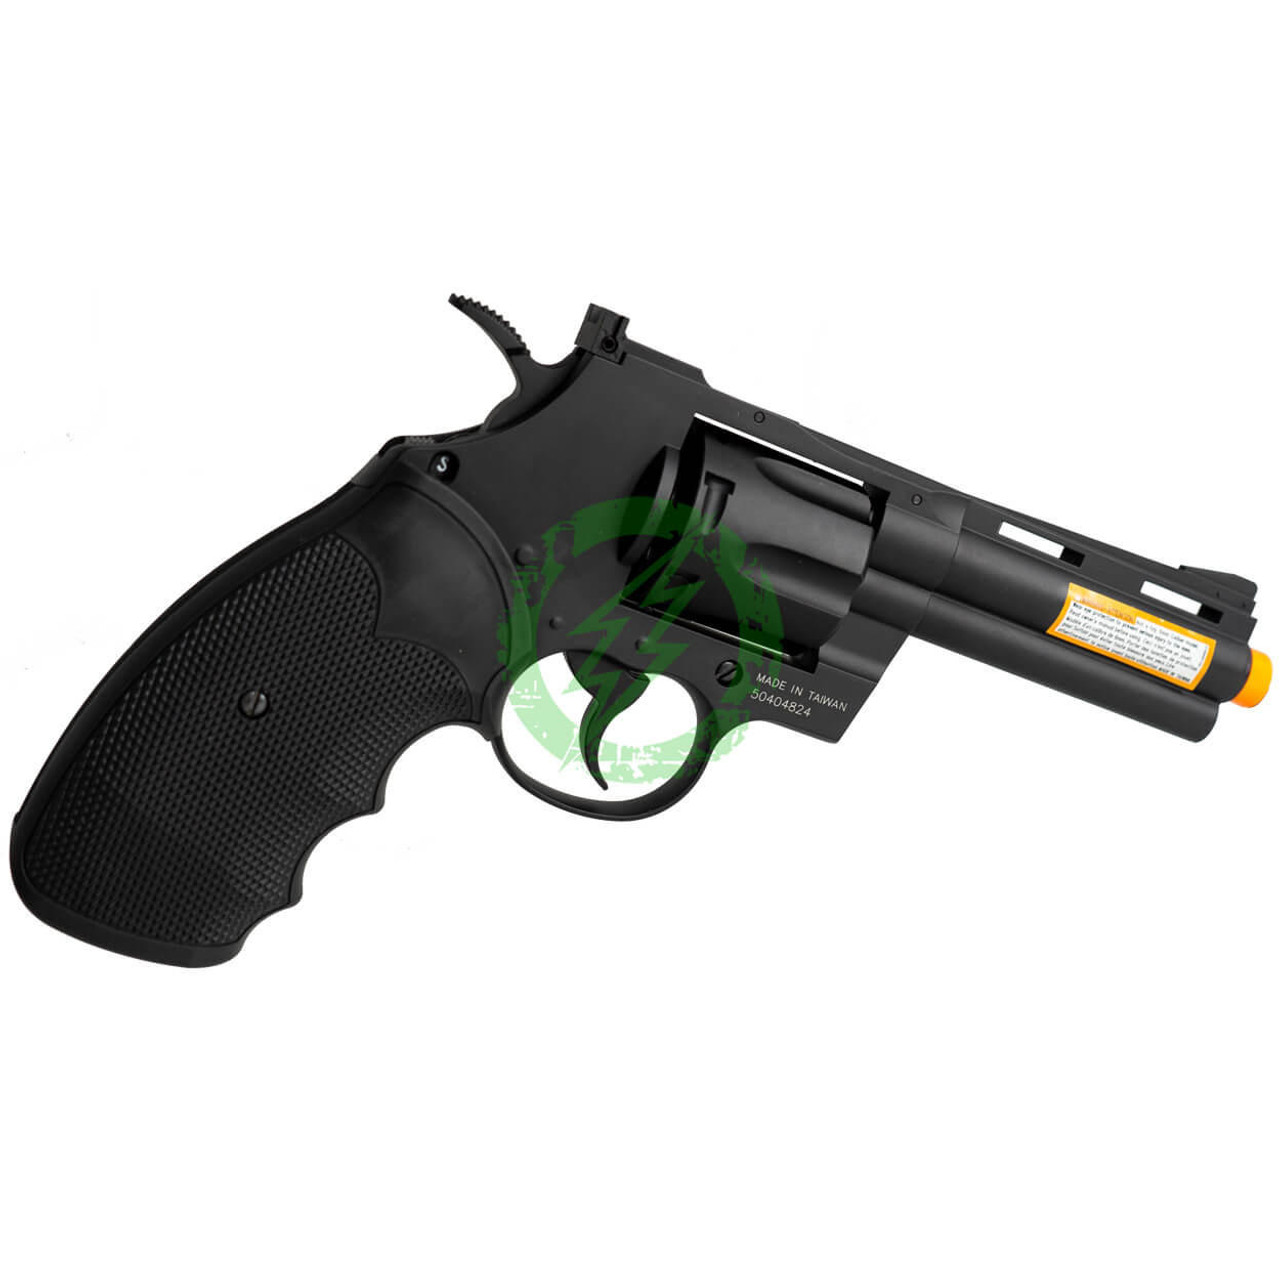 Colt Python 6 357 CO2 Airsoft Revolver